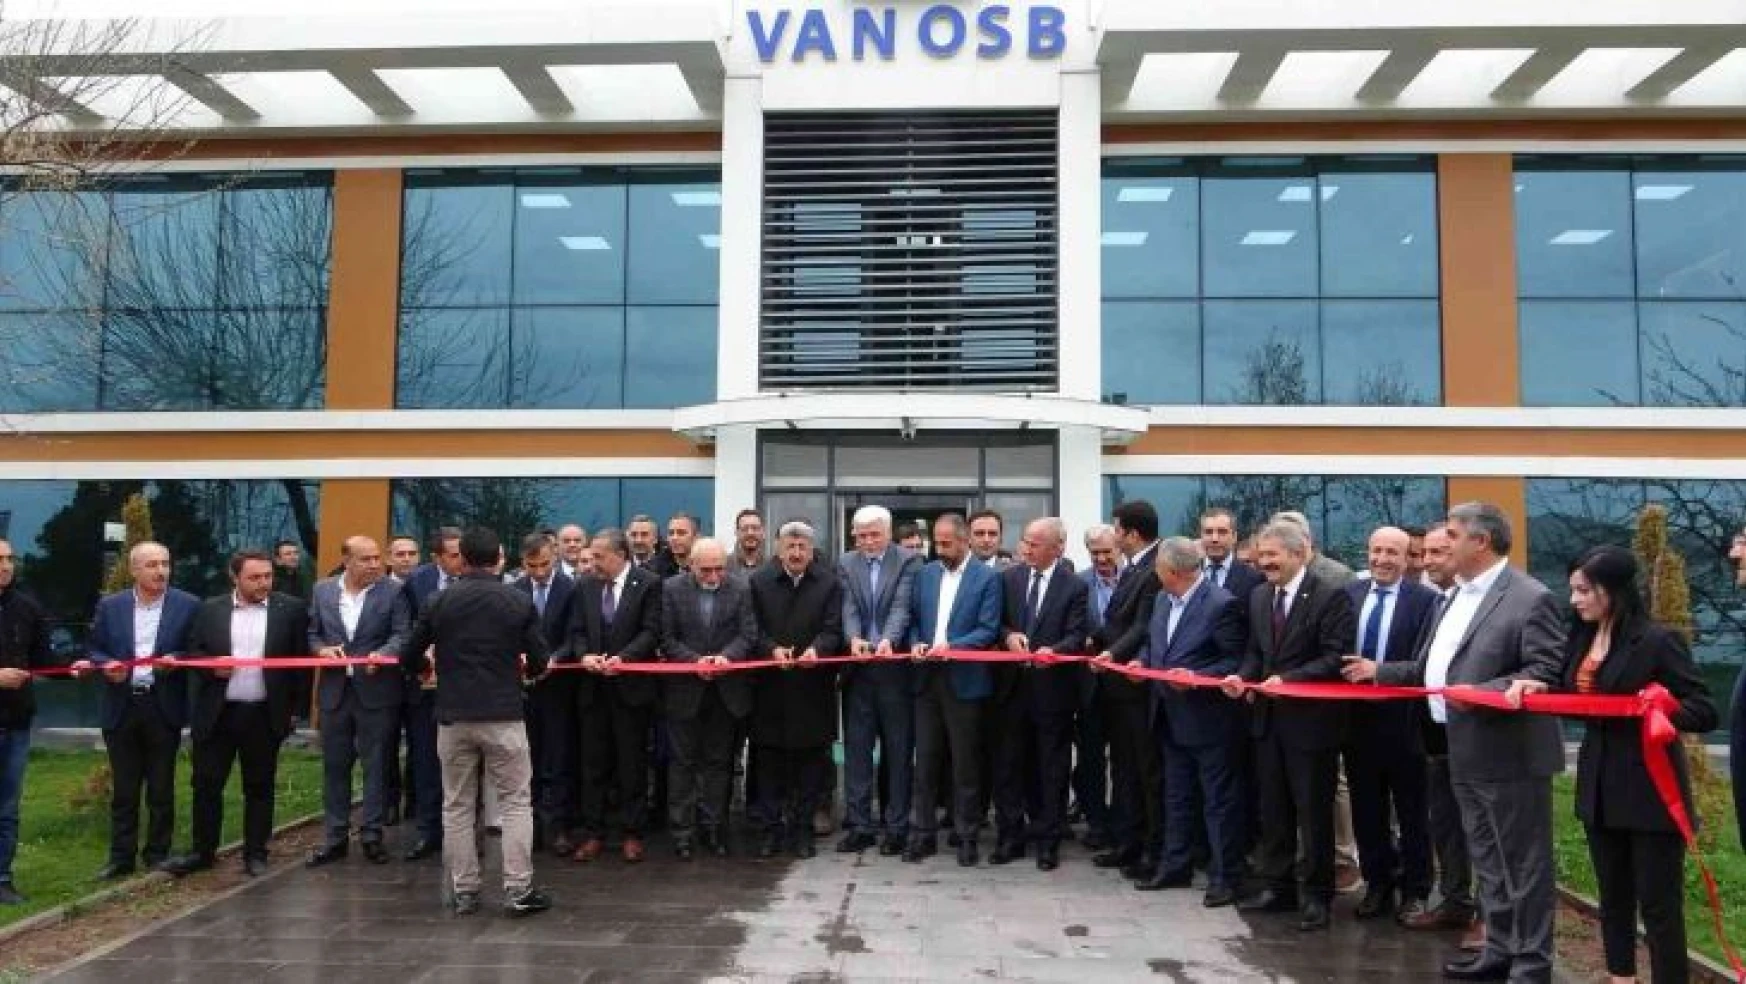 Van OSB'de 20 milyon Euro'luk yatırımın temeli atıldı